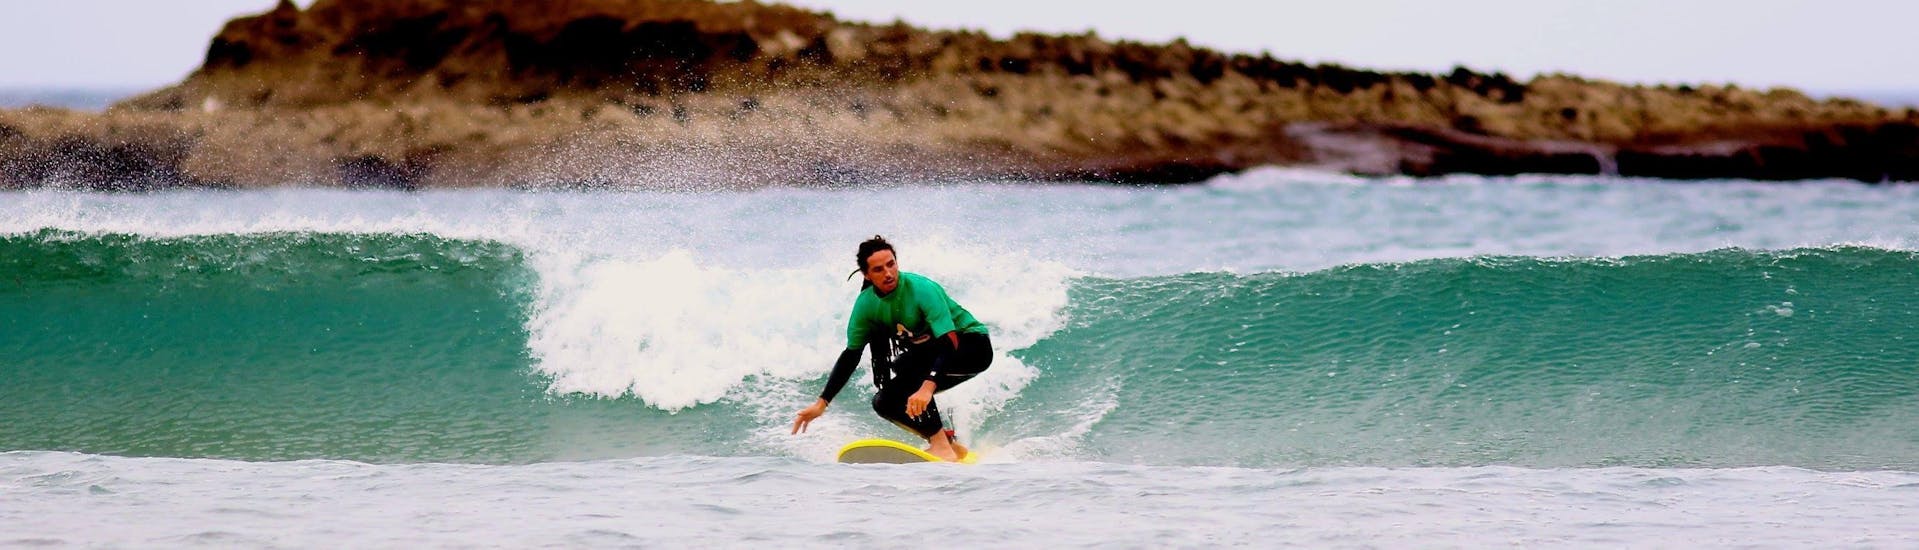 Curso de Surf en Carrapateira a partir de 6 años para surfistas avanzados.